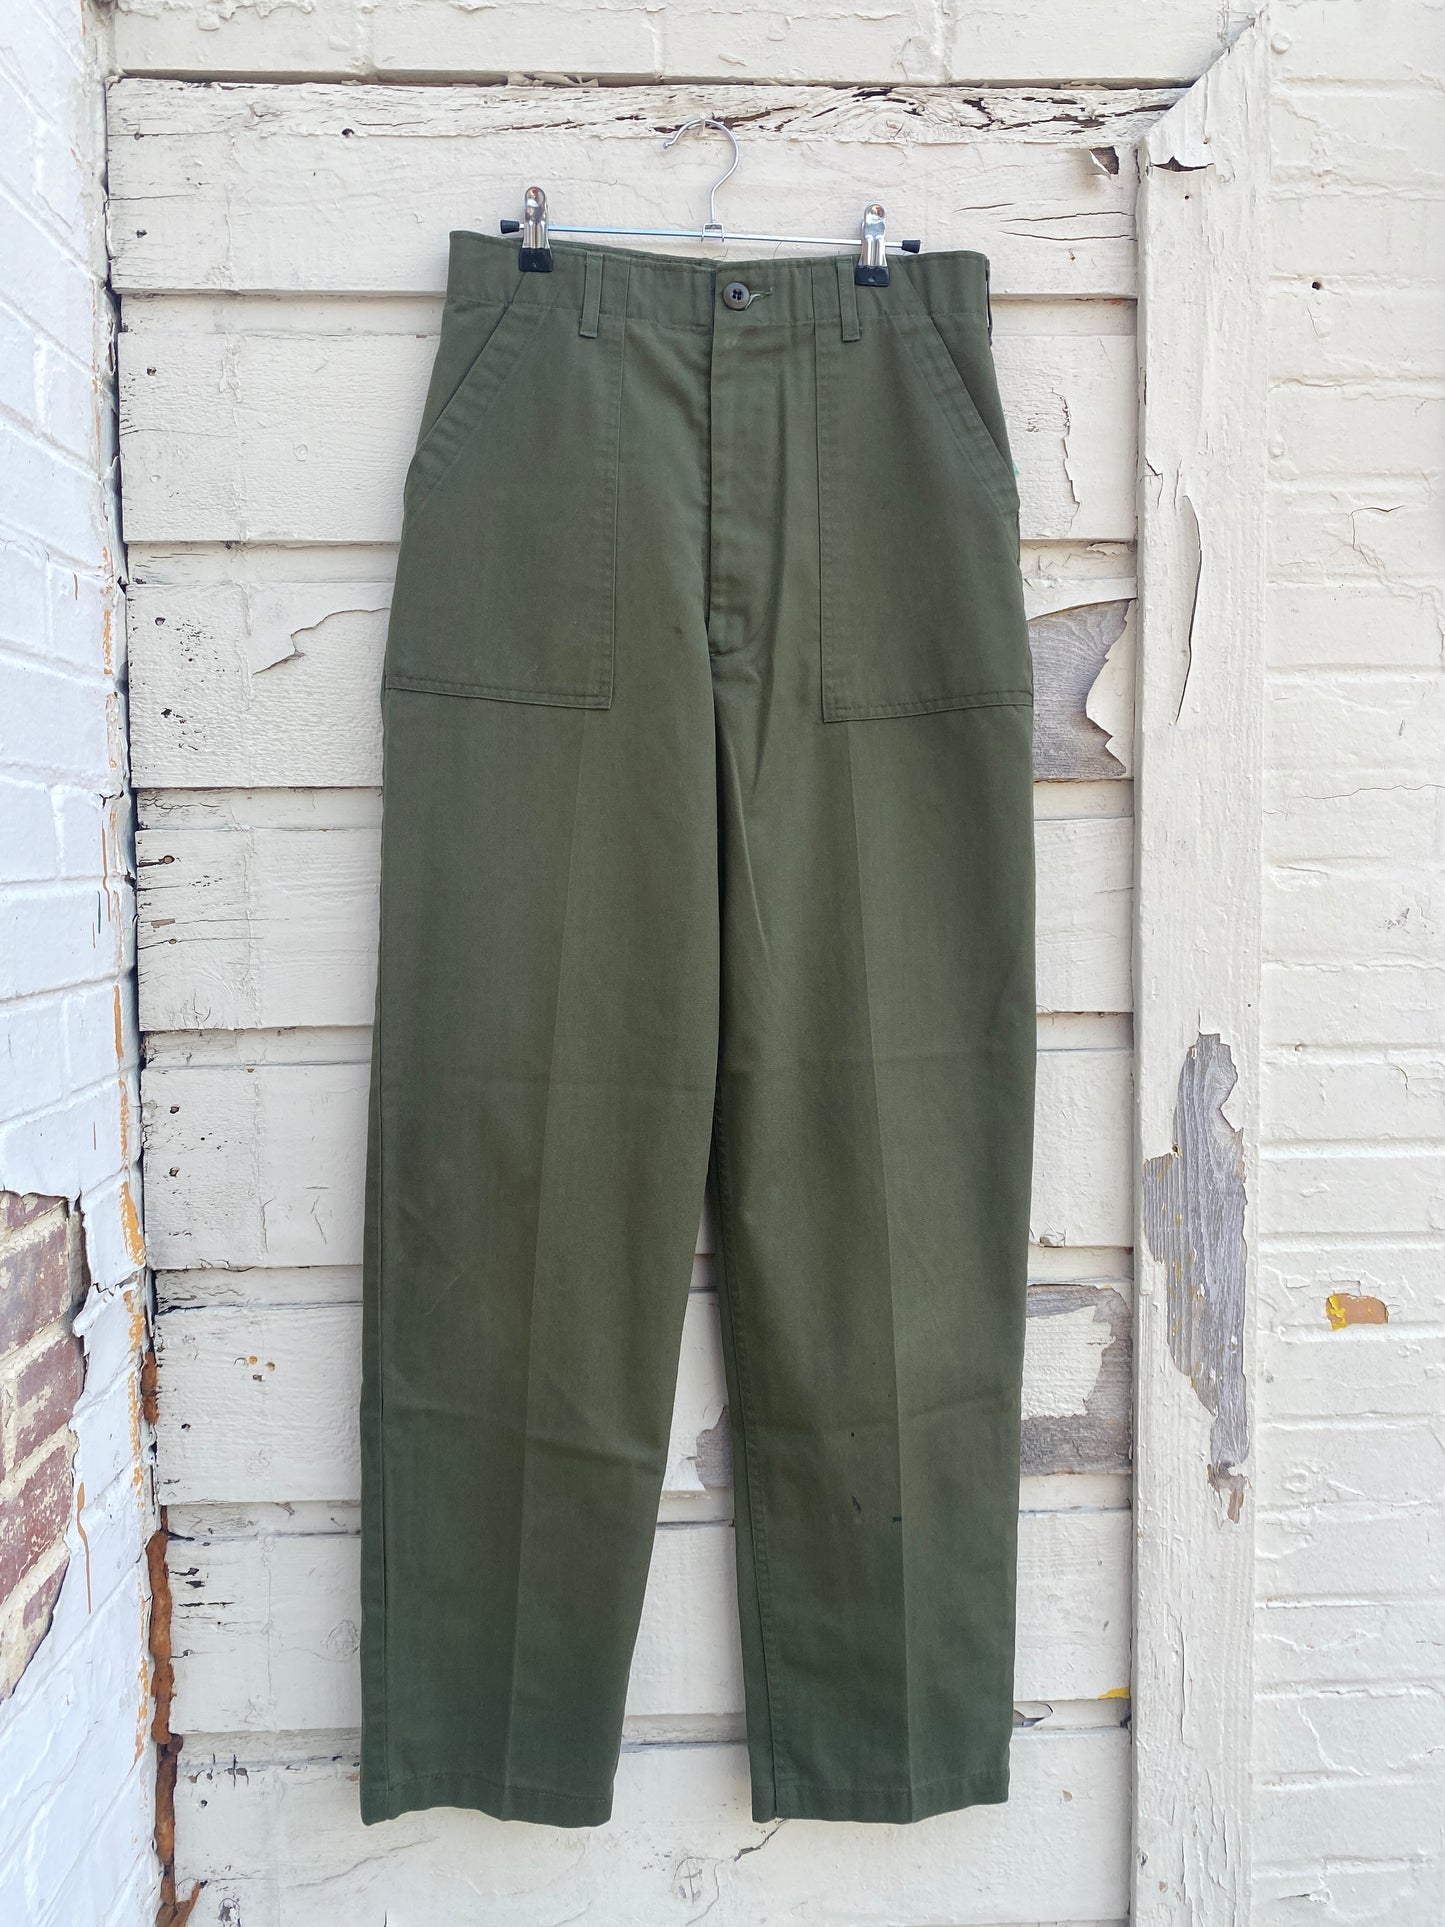 Vintage military og 507 pants 29in waist